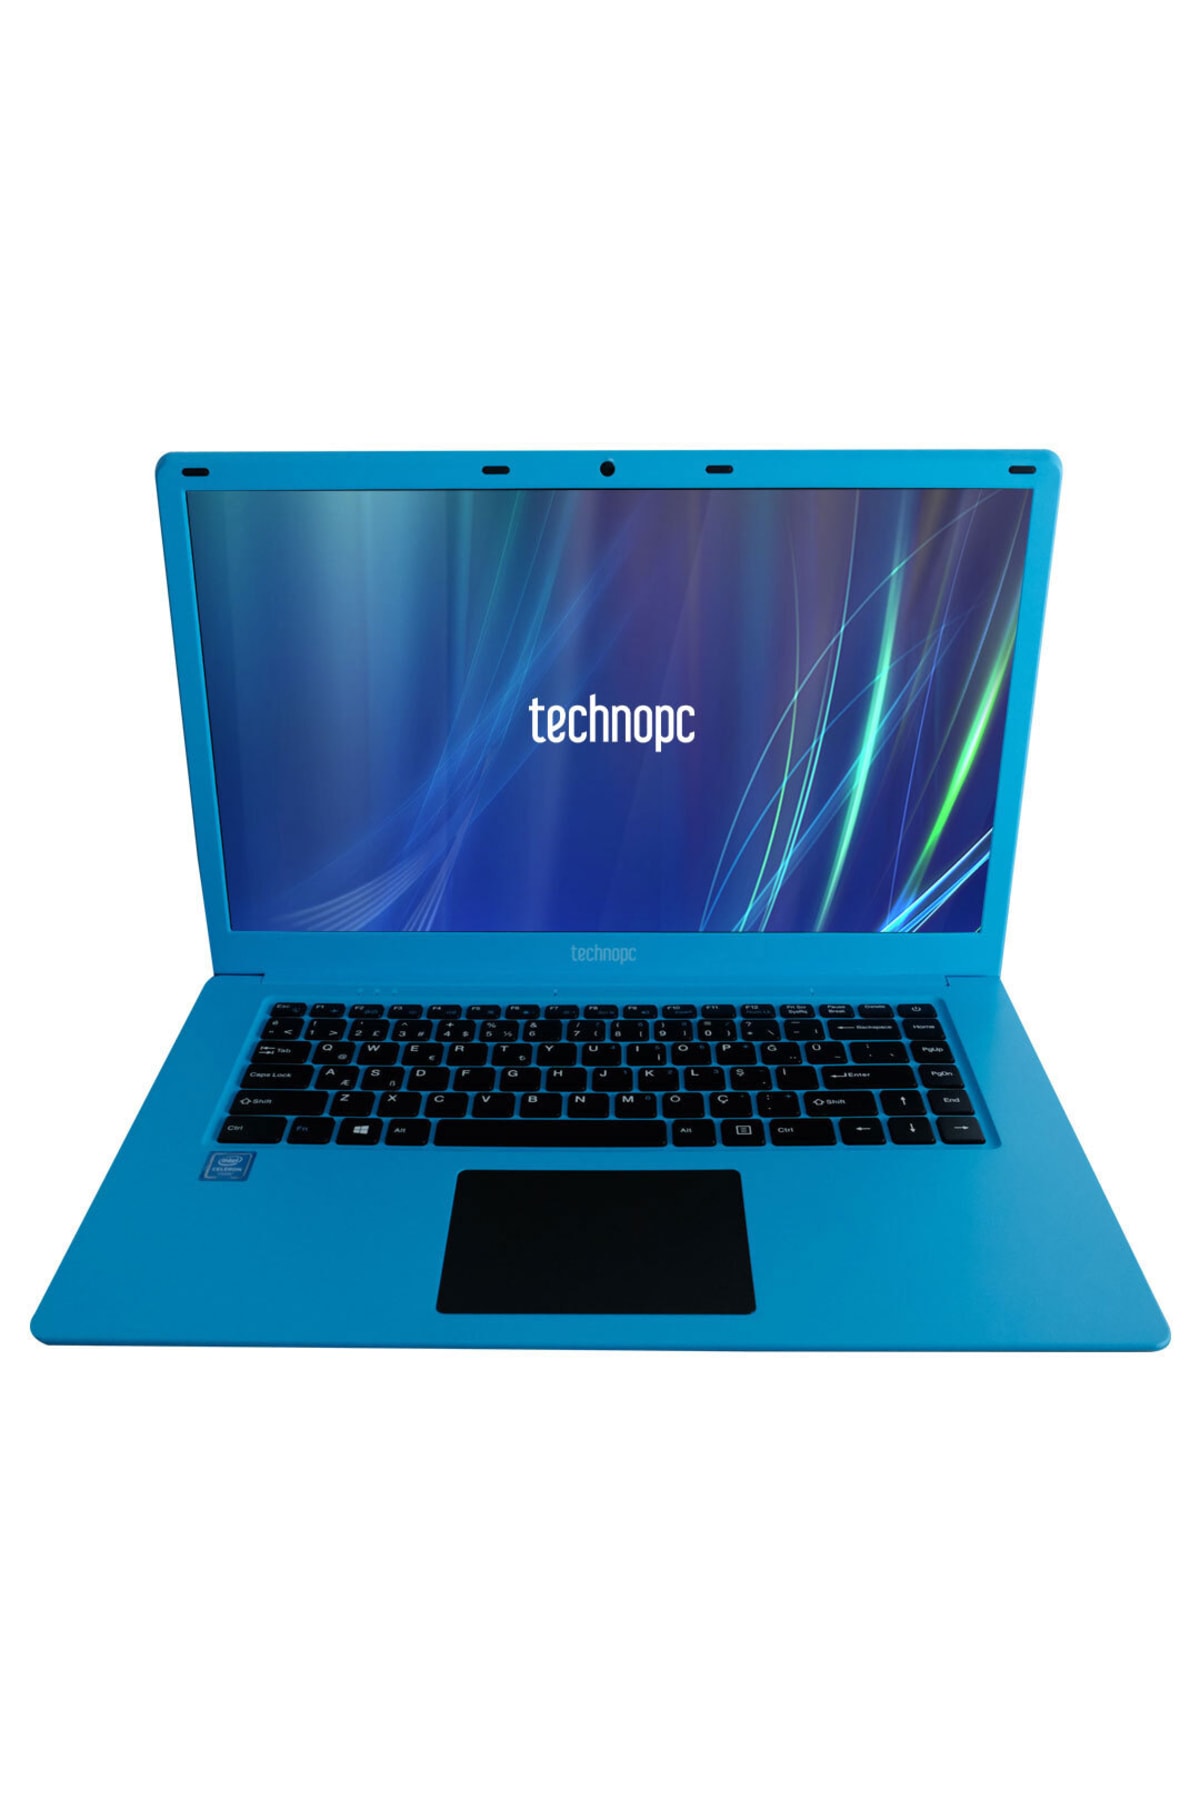 TECHNOPC Ti15n33 N3350e 4gb Ram 128gb + 240gb Ssd Freedos Mavi 15.6 Inc Notebook Taşınabilir Bilgisayar